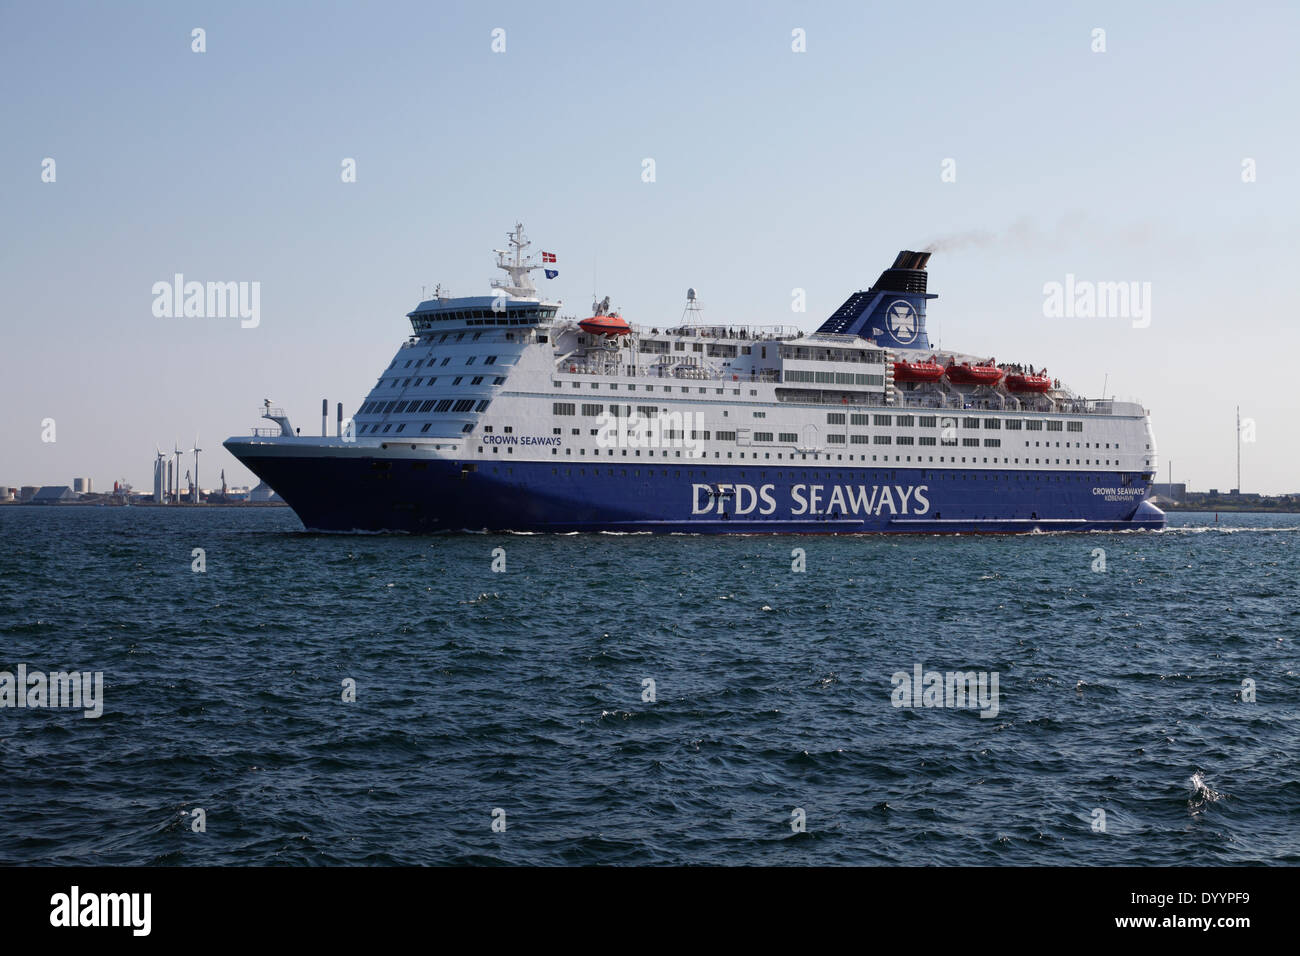 El DFDS ro-ro / ferry de pasajeros ms Crown Seaways en su camino en el Sound Øresund de Copenhague en su viaje nocturno a Oslo, Noruega. Un viaje doble también se utiliza a menudo como un mini-crucero. Foto de stock